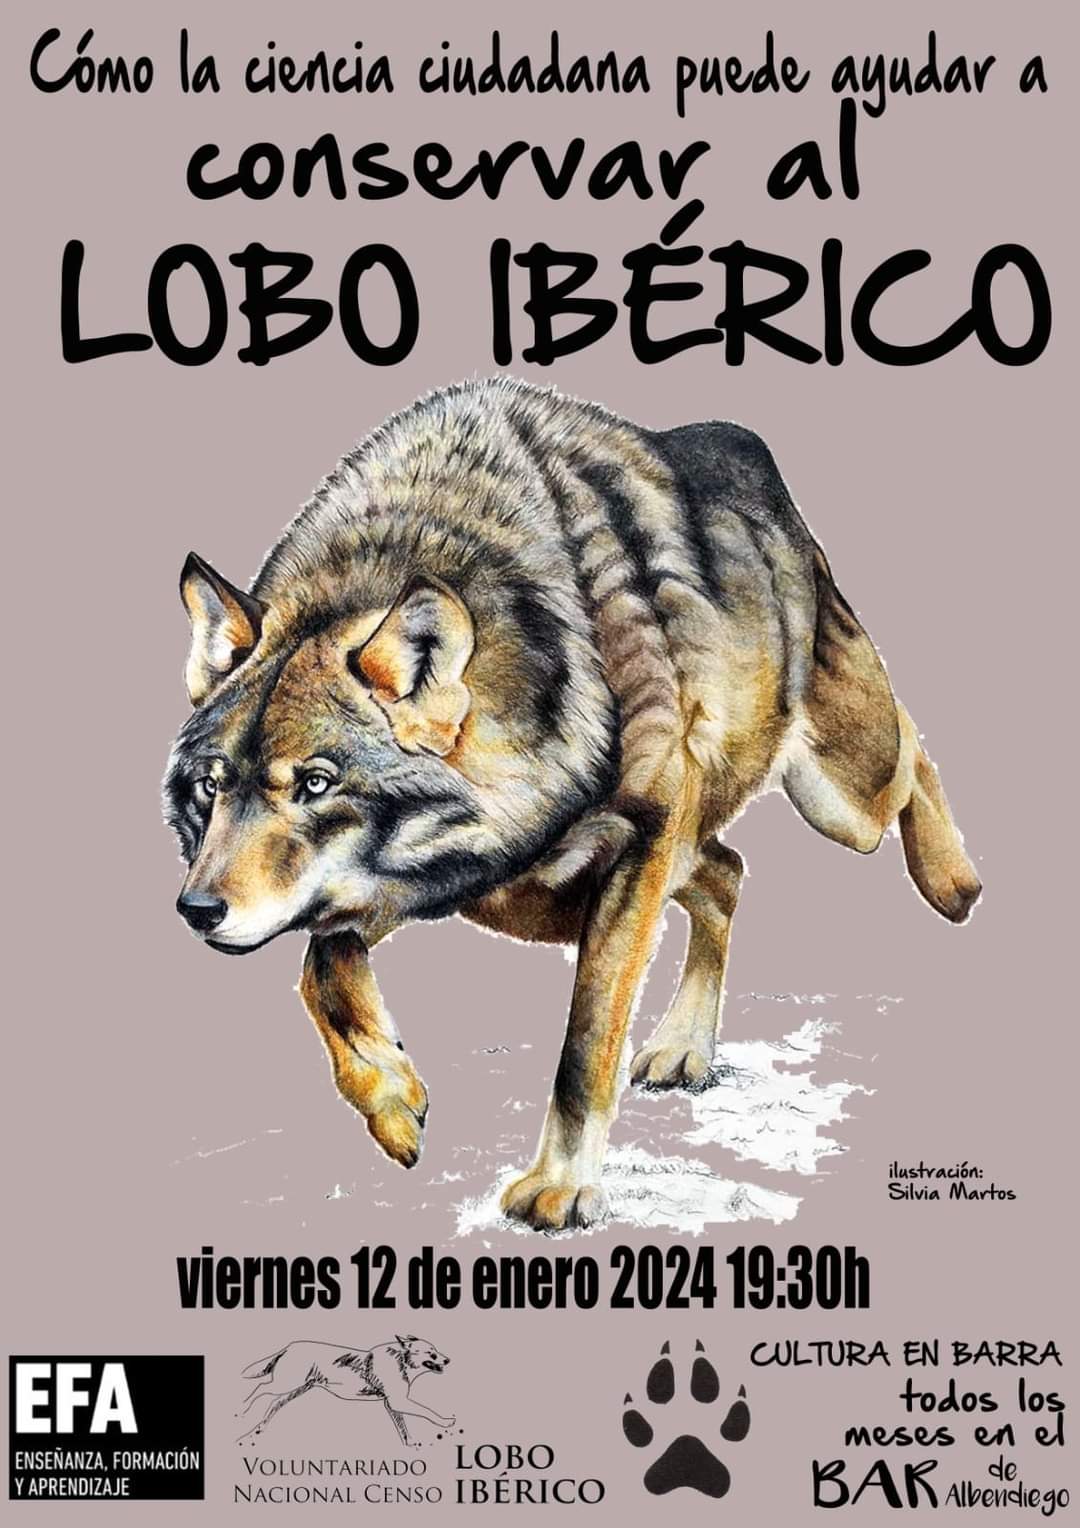 El Lobo Ibérico - Cultura en Barra